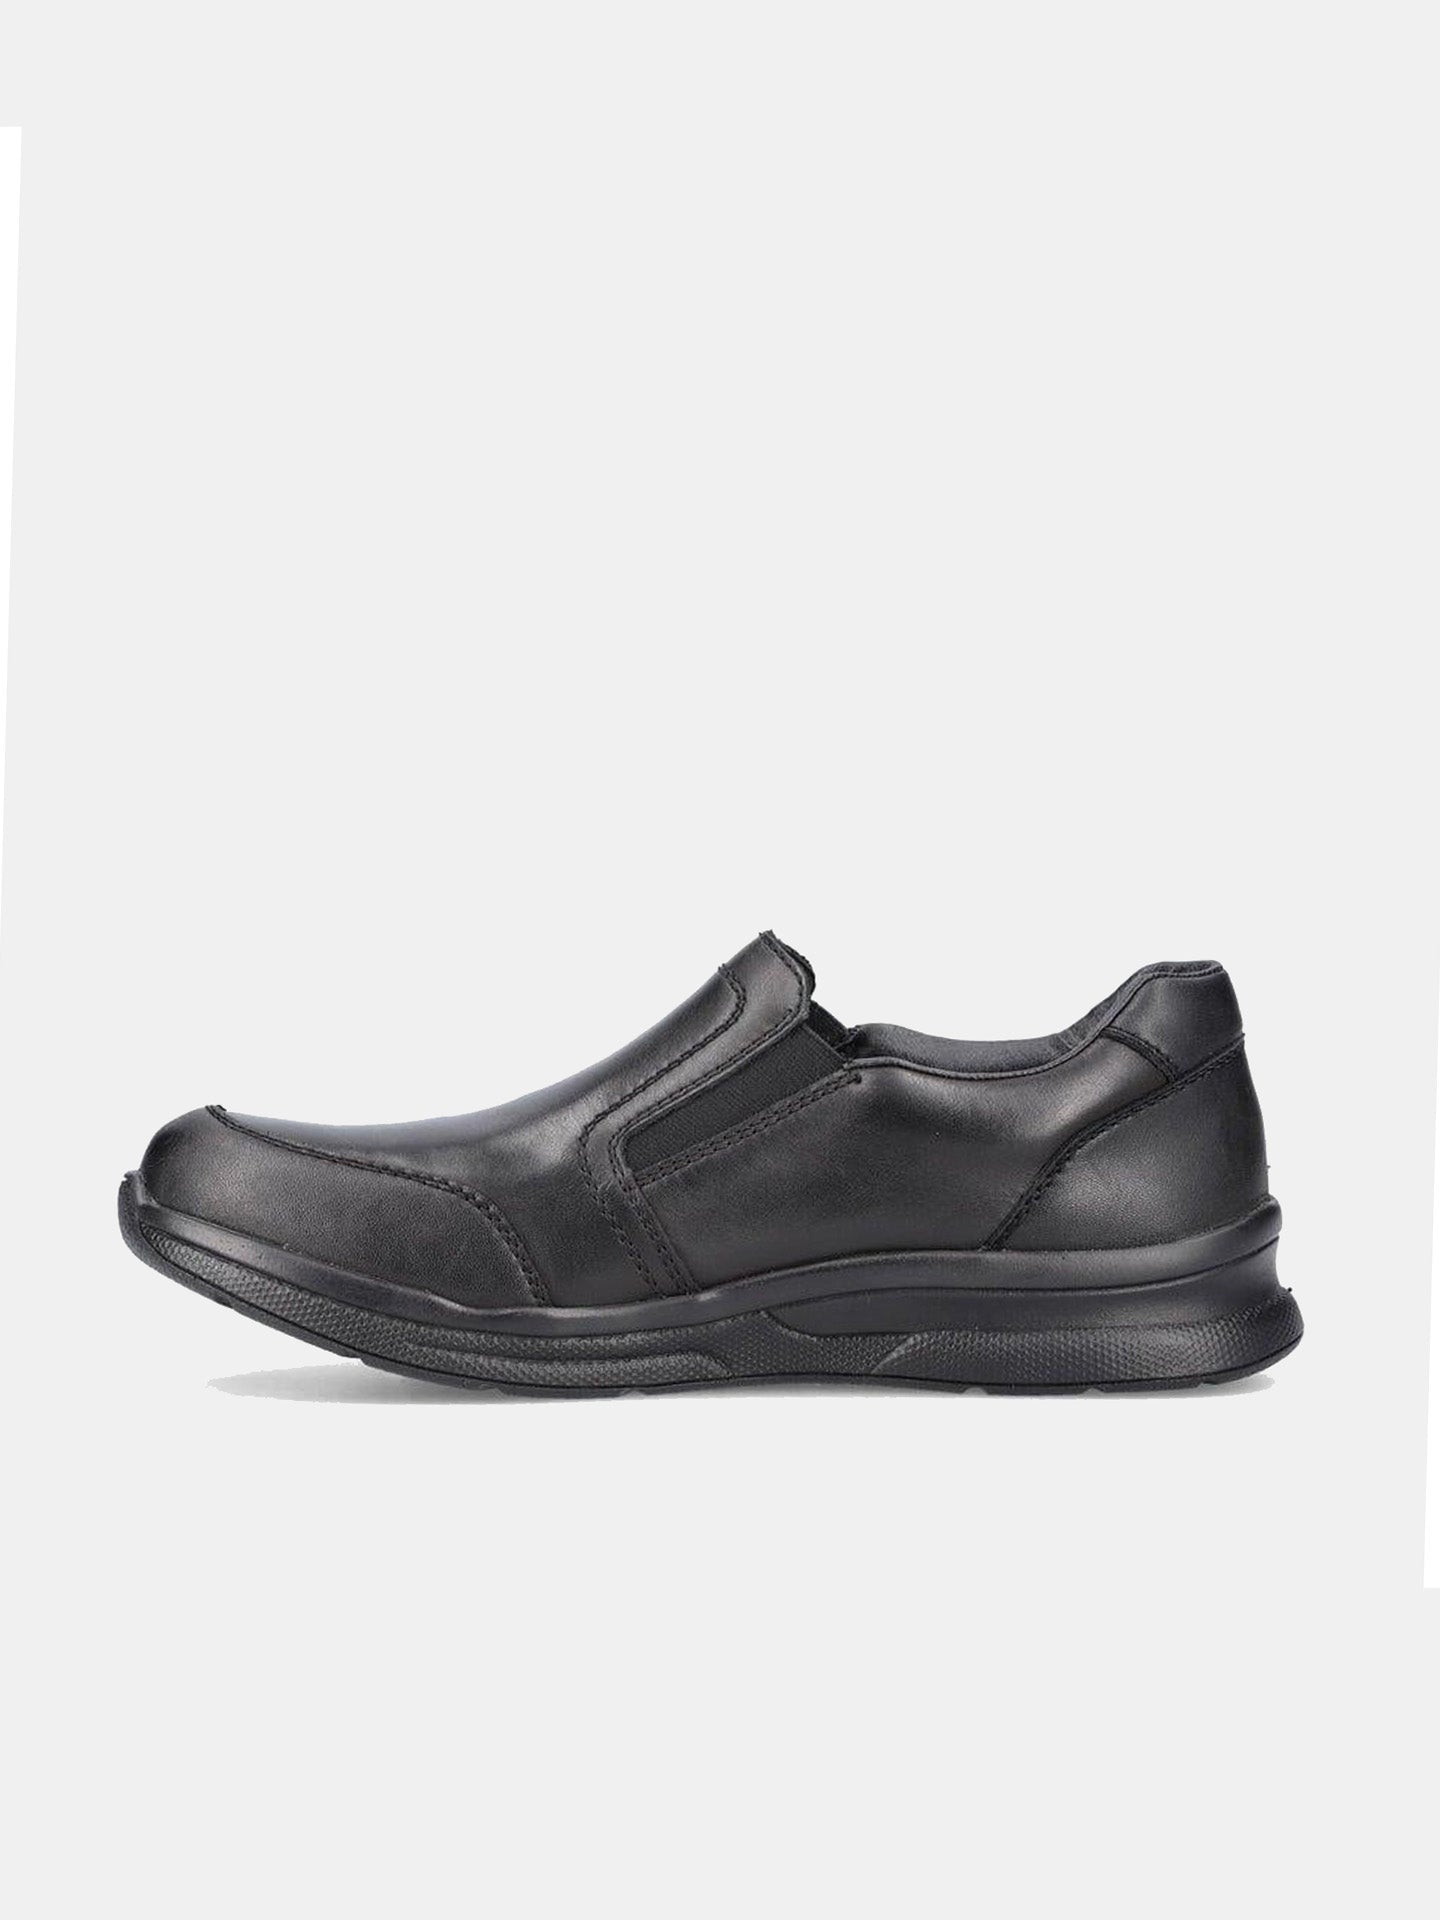 Rieker 14850 Men's Casual Shoes